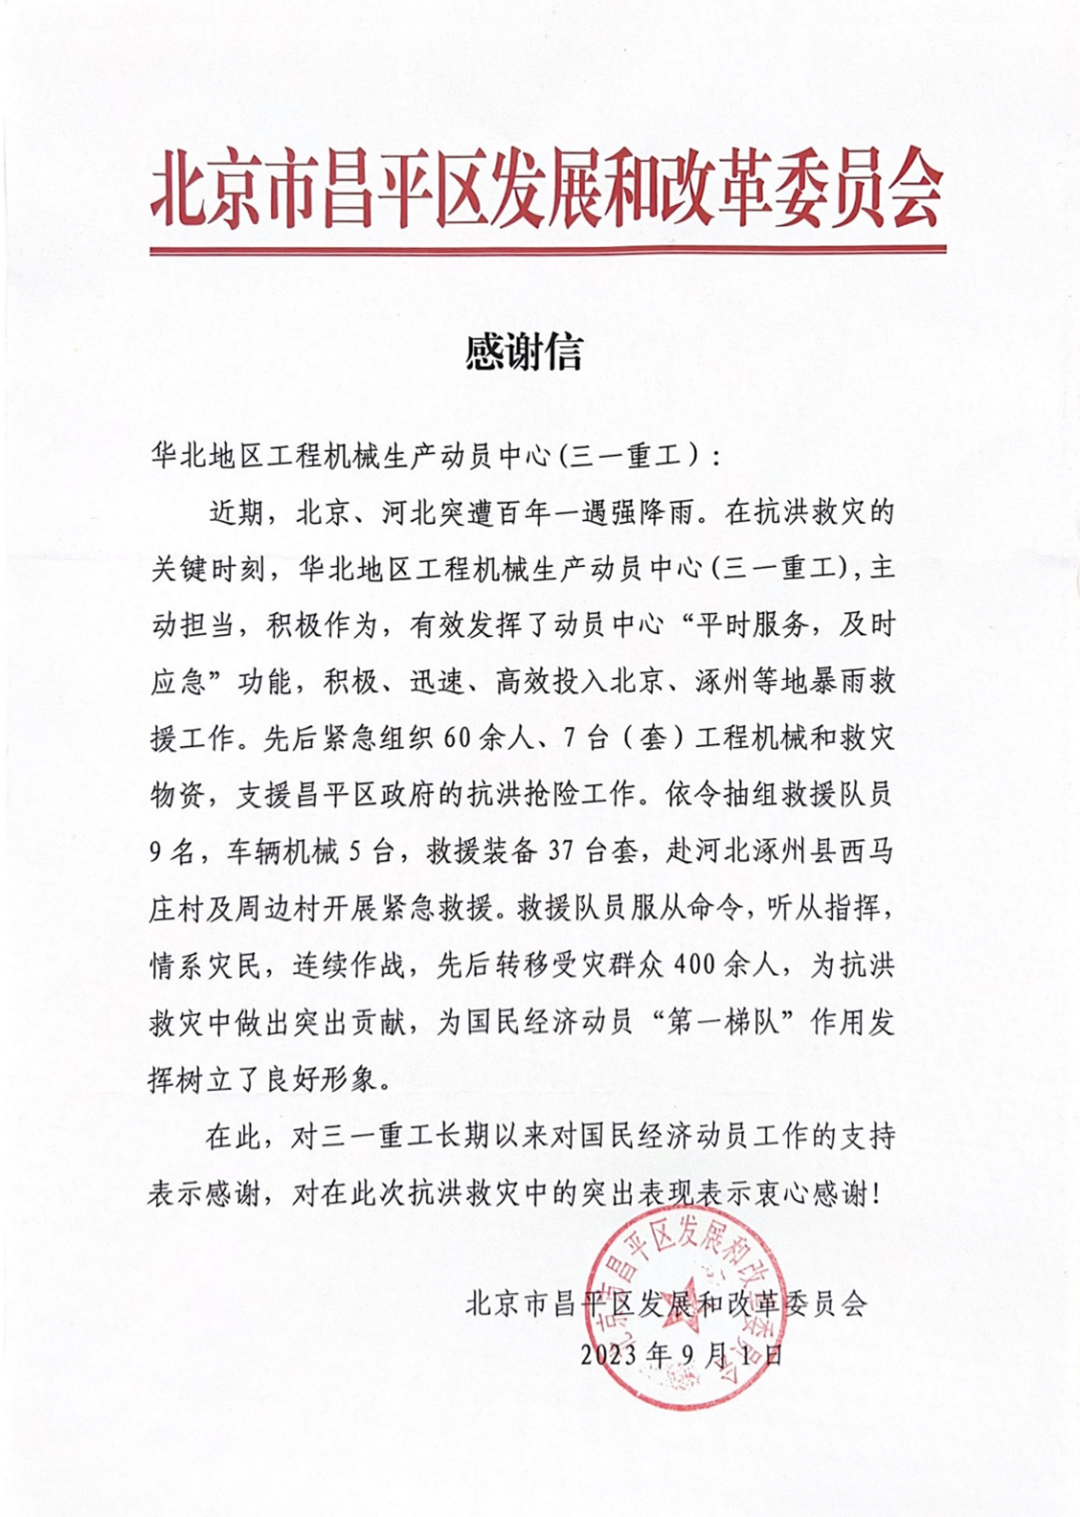 大写的赞！三一重工收到北京市昌平区发展和改革委员会发来的感谢信